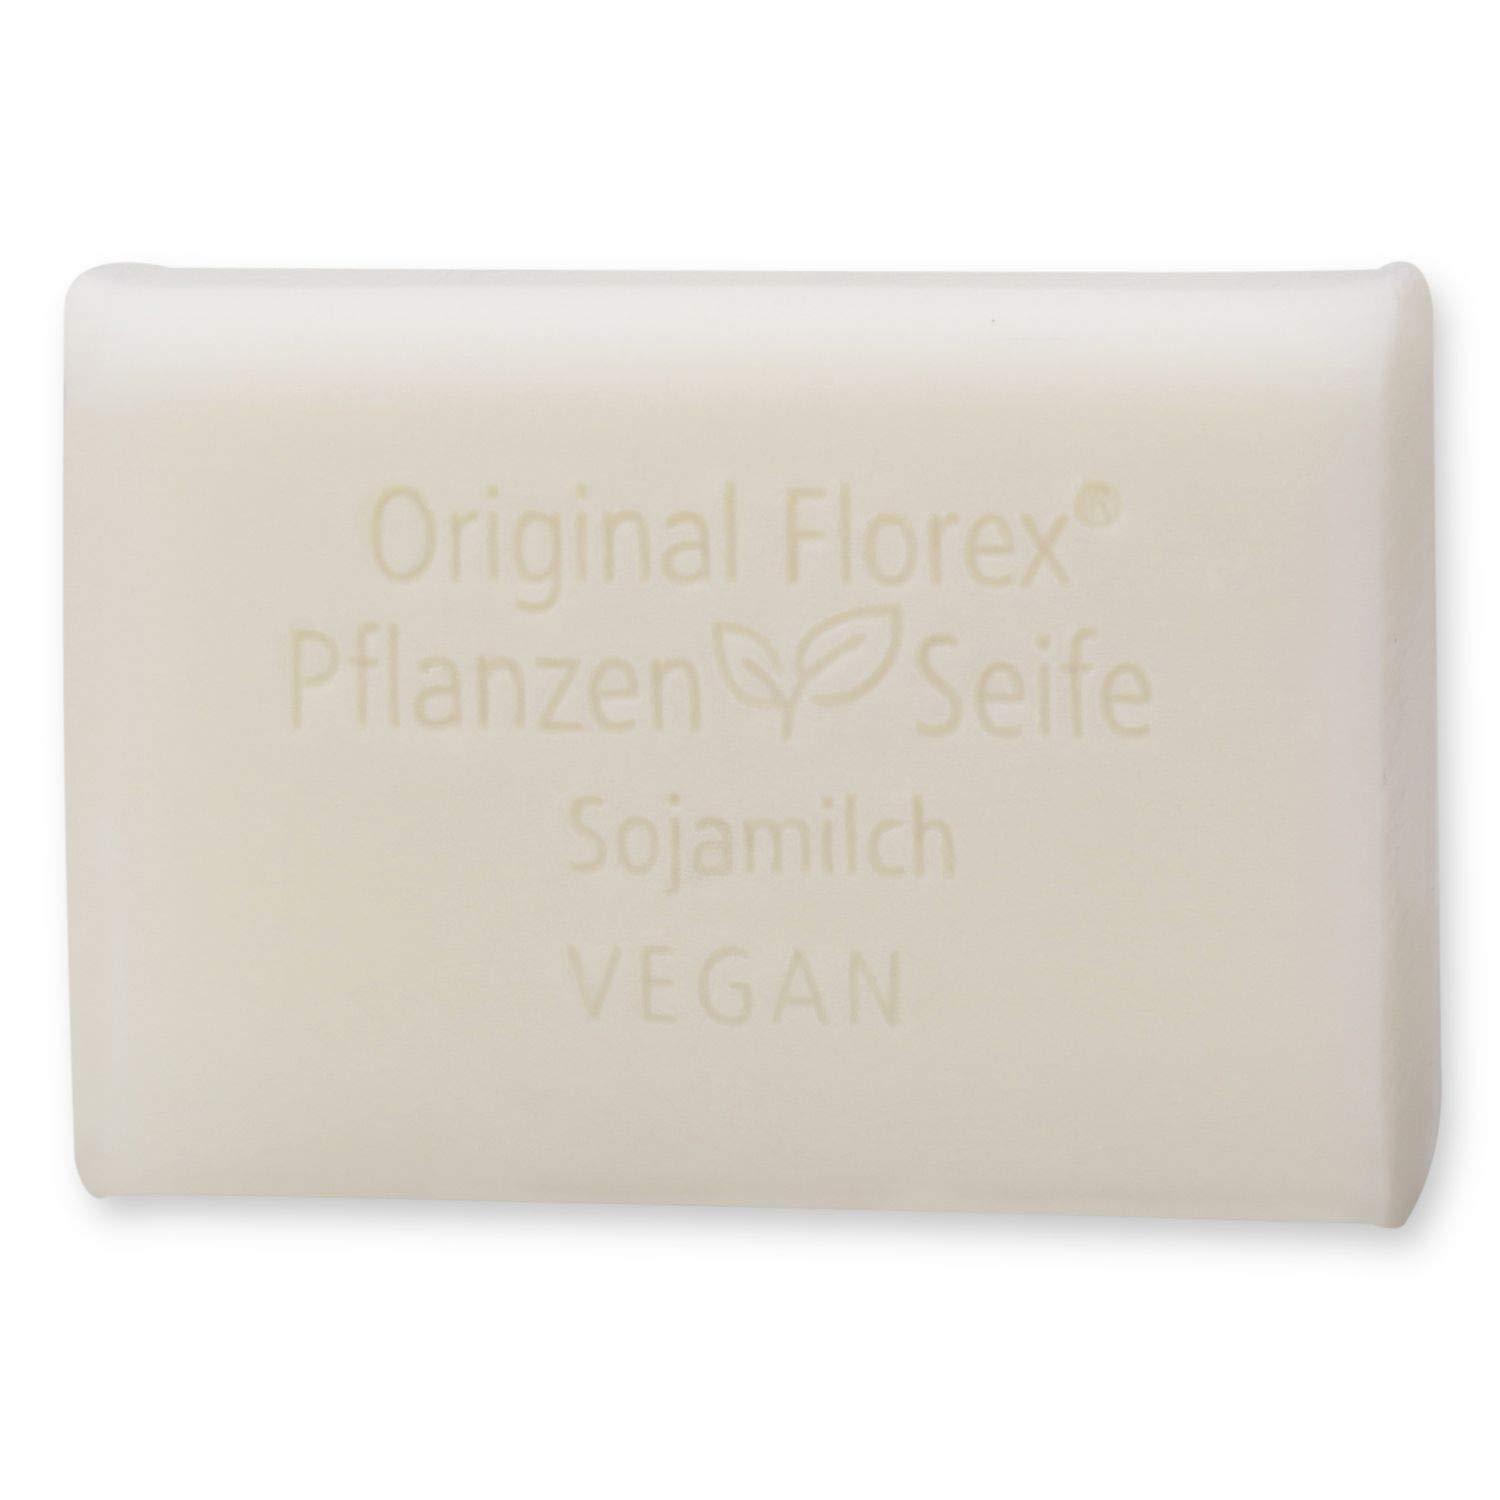 Florex Vegane Pflanzenölseife 7973 Sojamilch - cremige Öle verwöhnen und pflegen die Haut 100 g